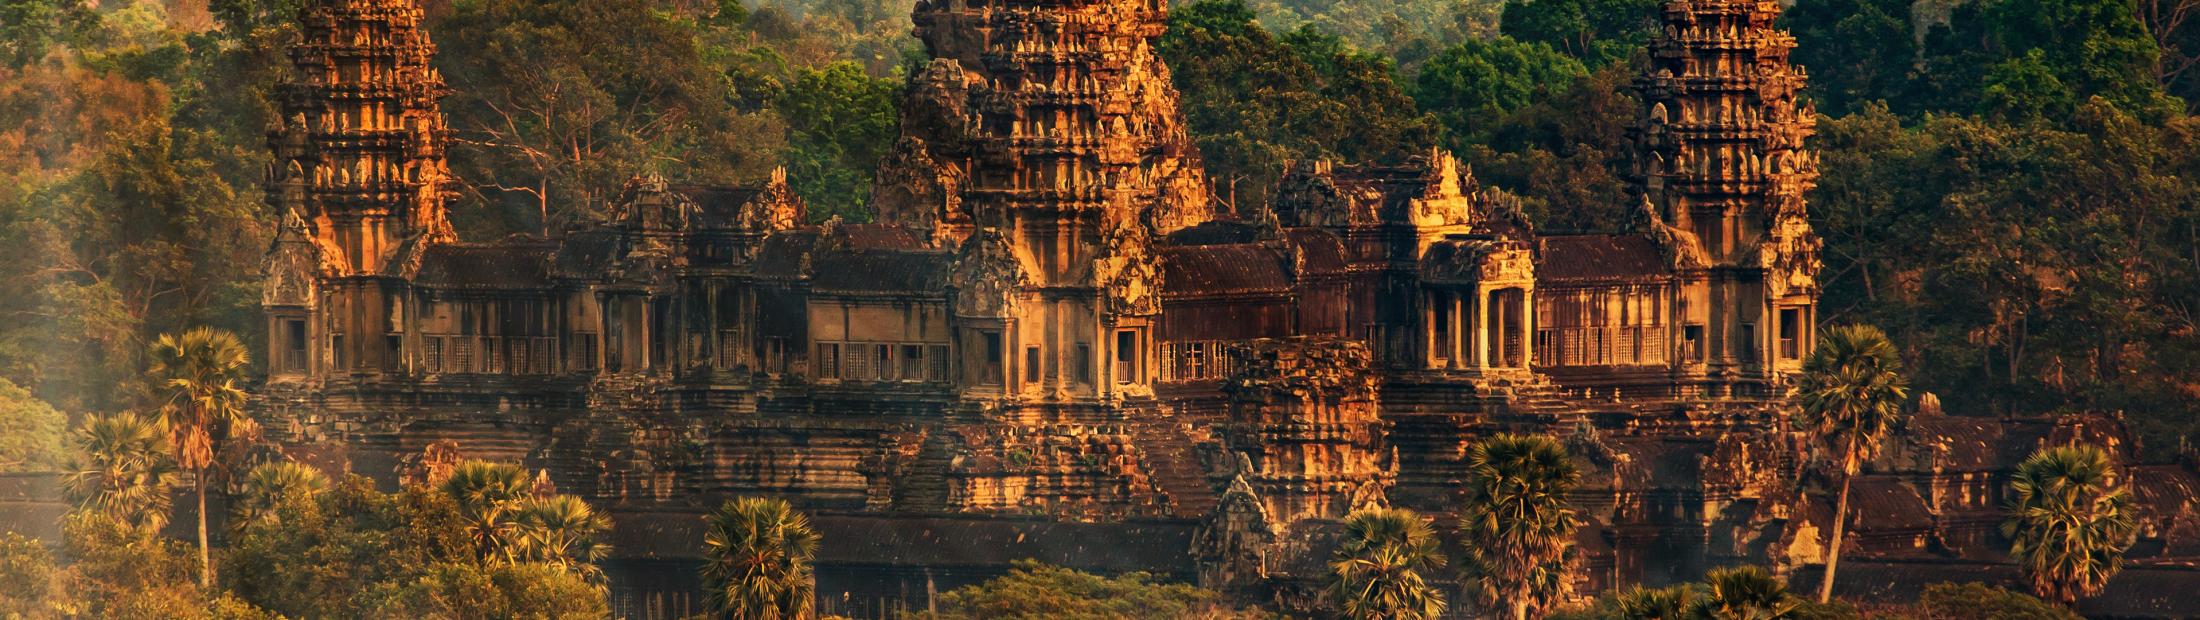 Camboya, historia y cultura de los jemeres